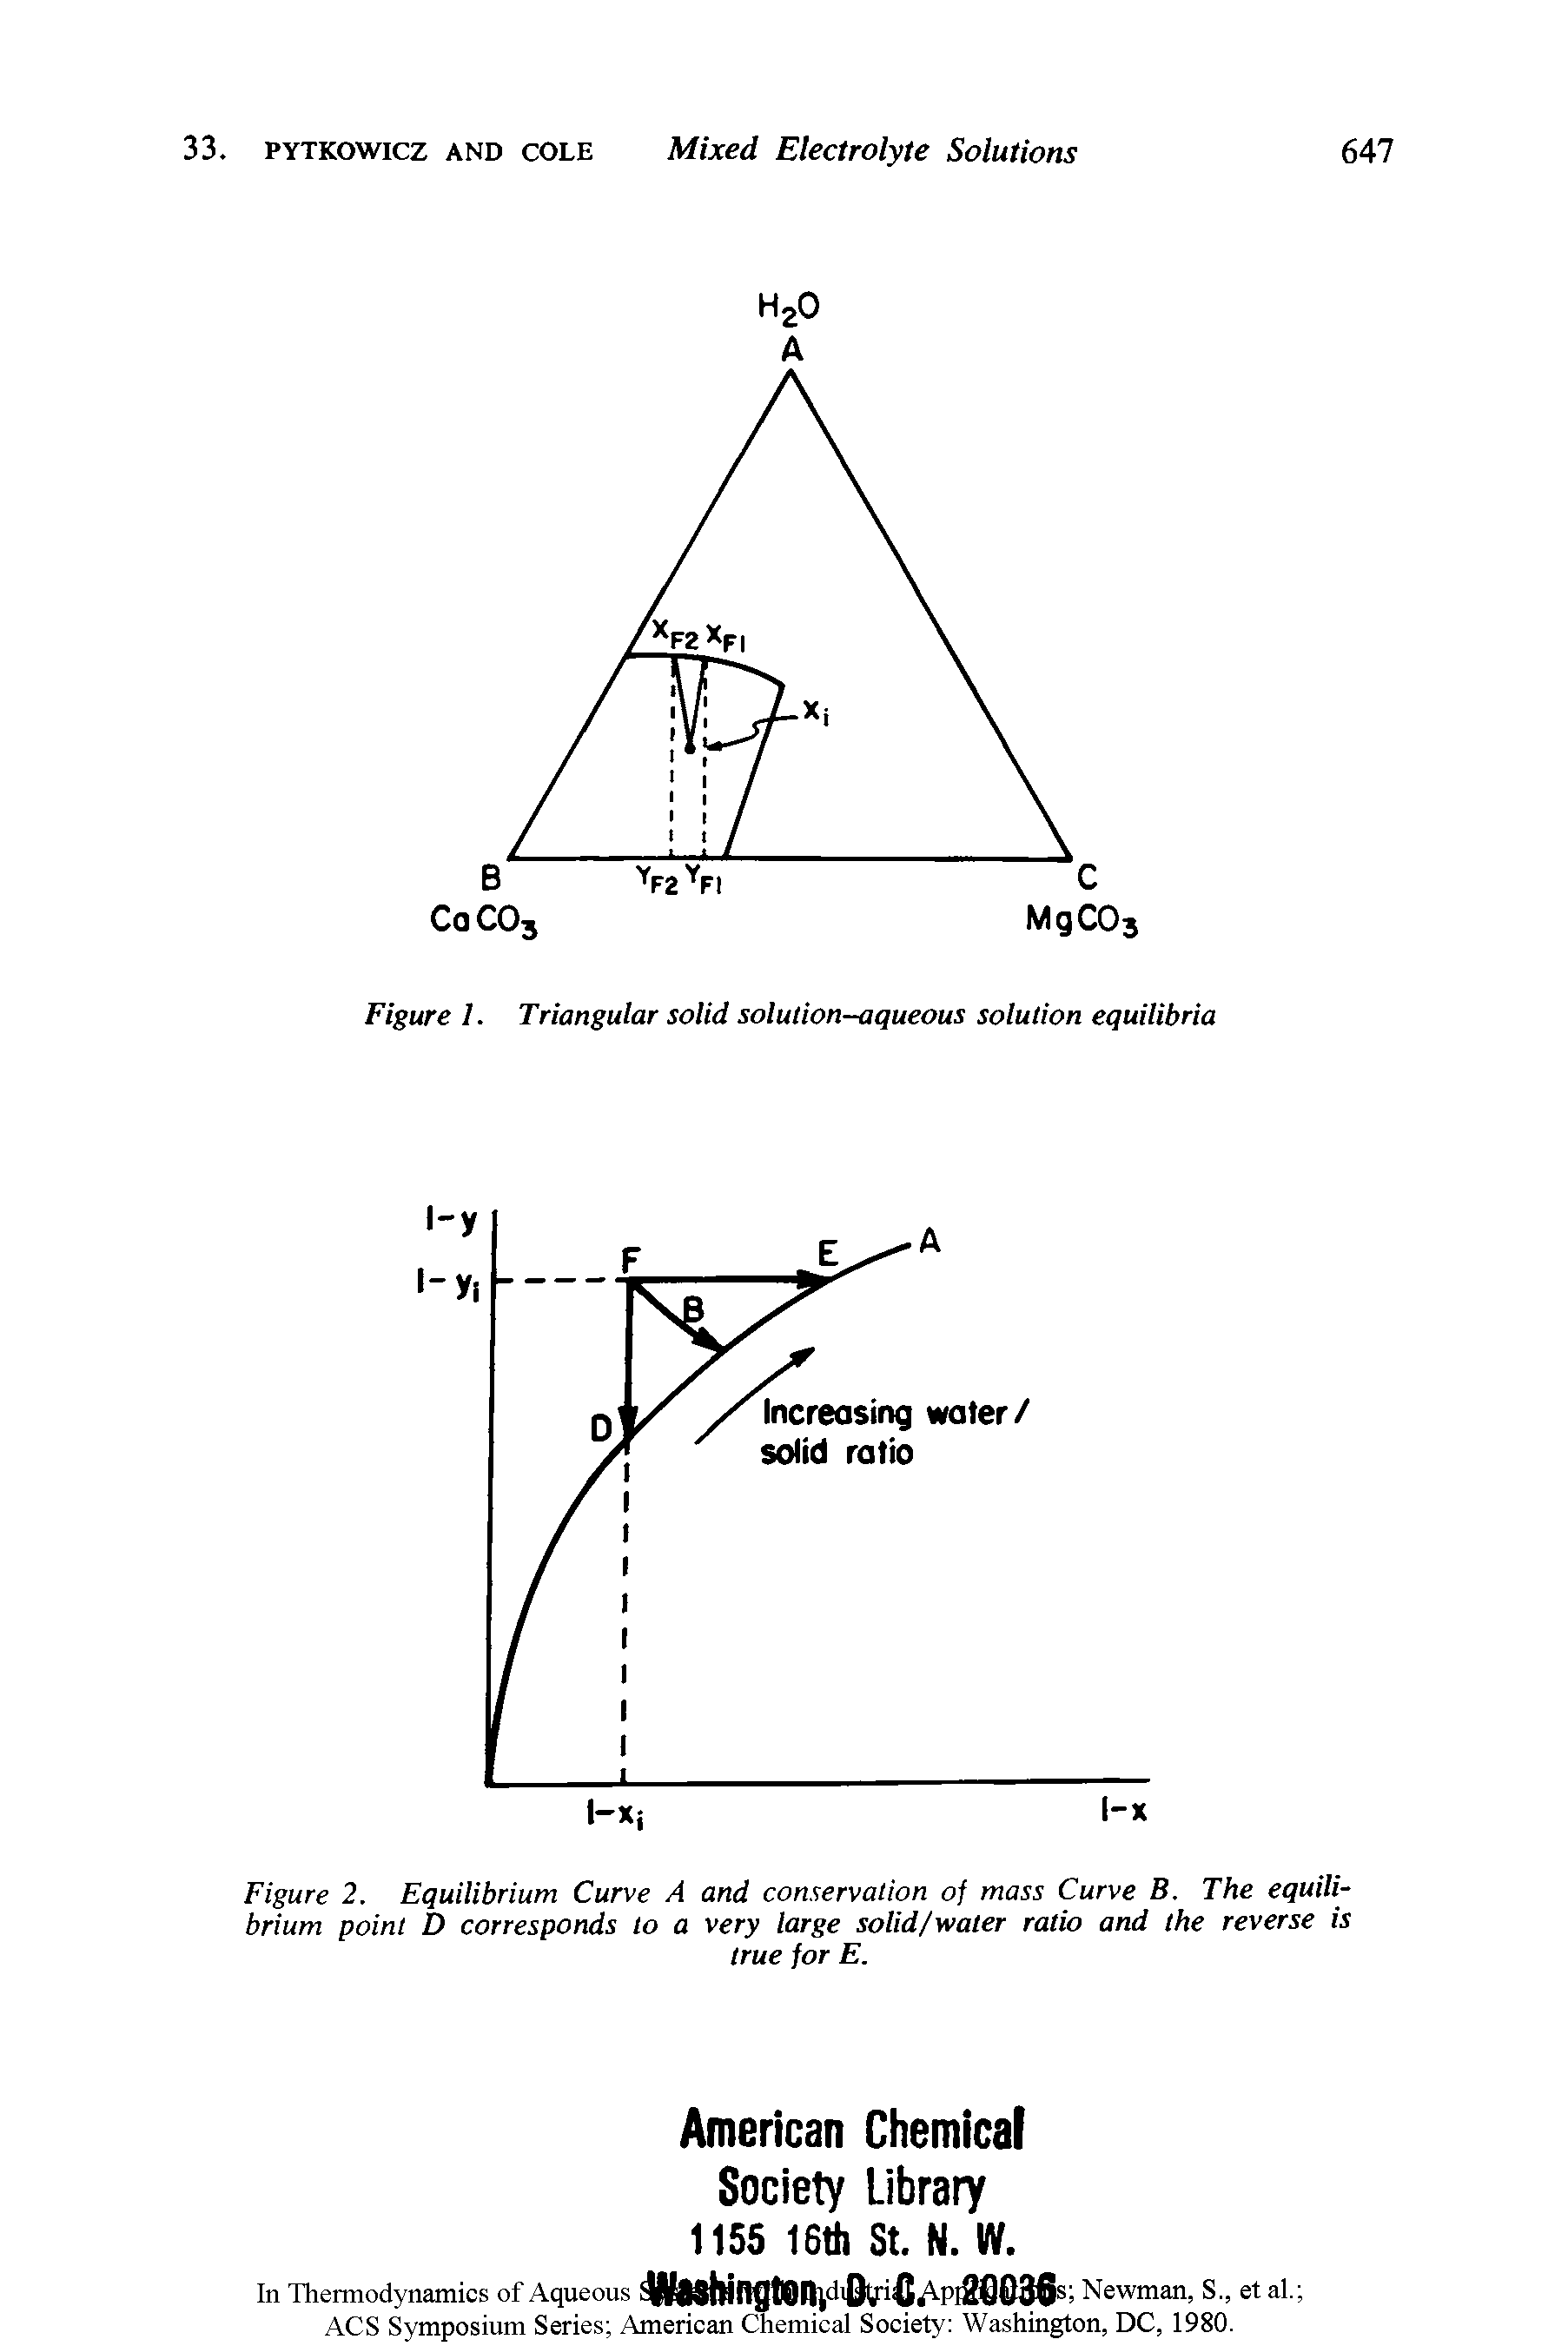 Figure 1. Triangular solid solution-aqueous solution equilibria...